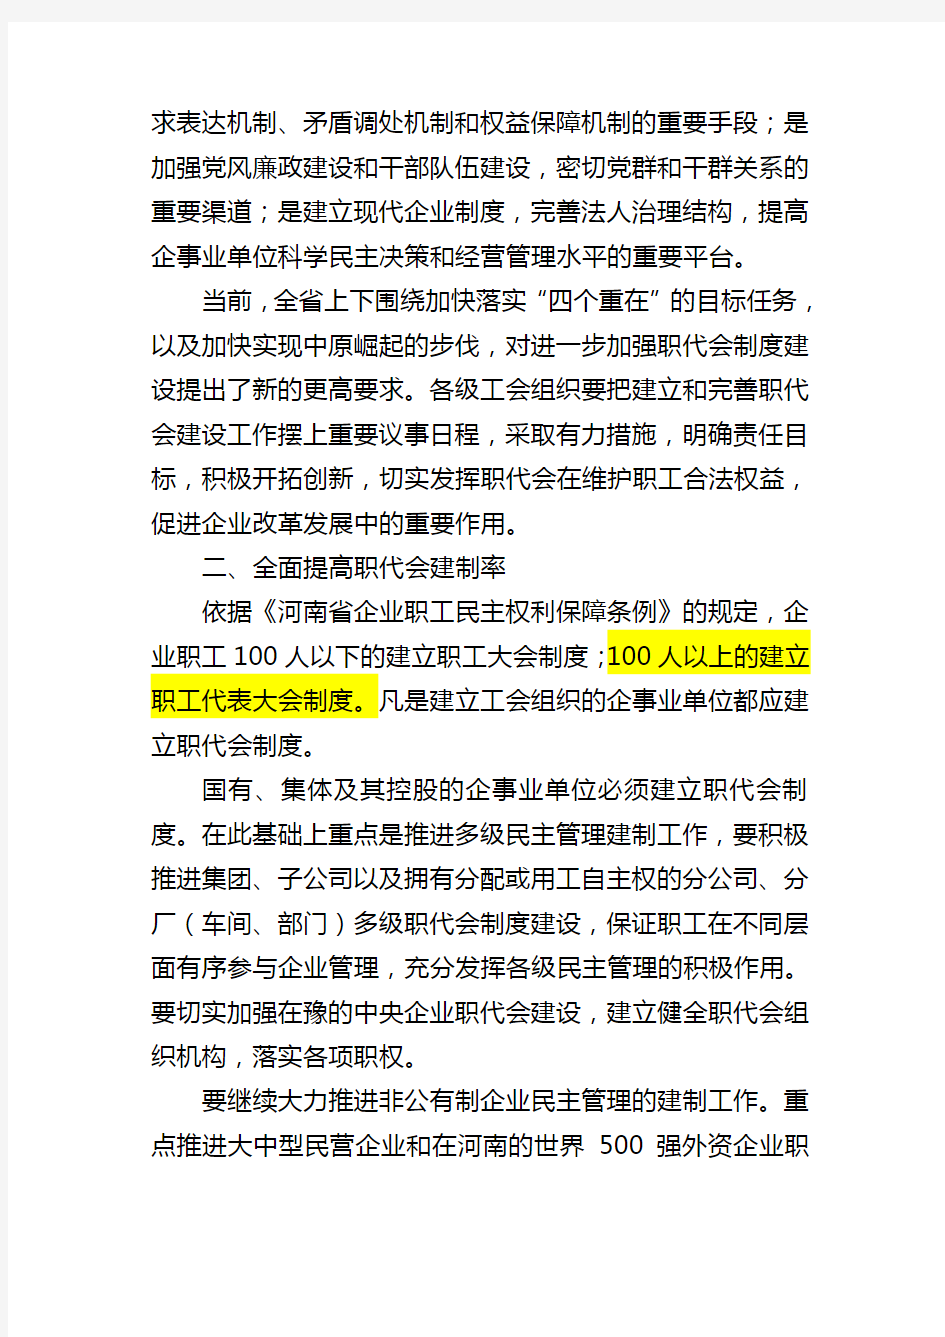 河南省总工会关于进一步加强职工代表大会制度建设的意见